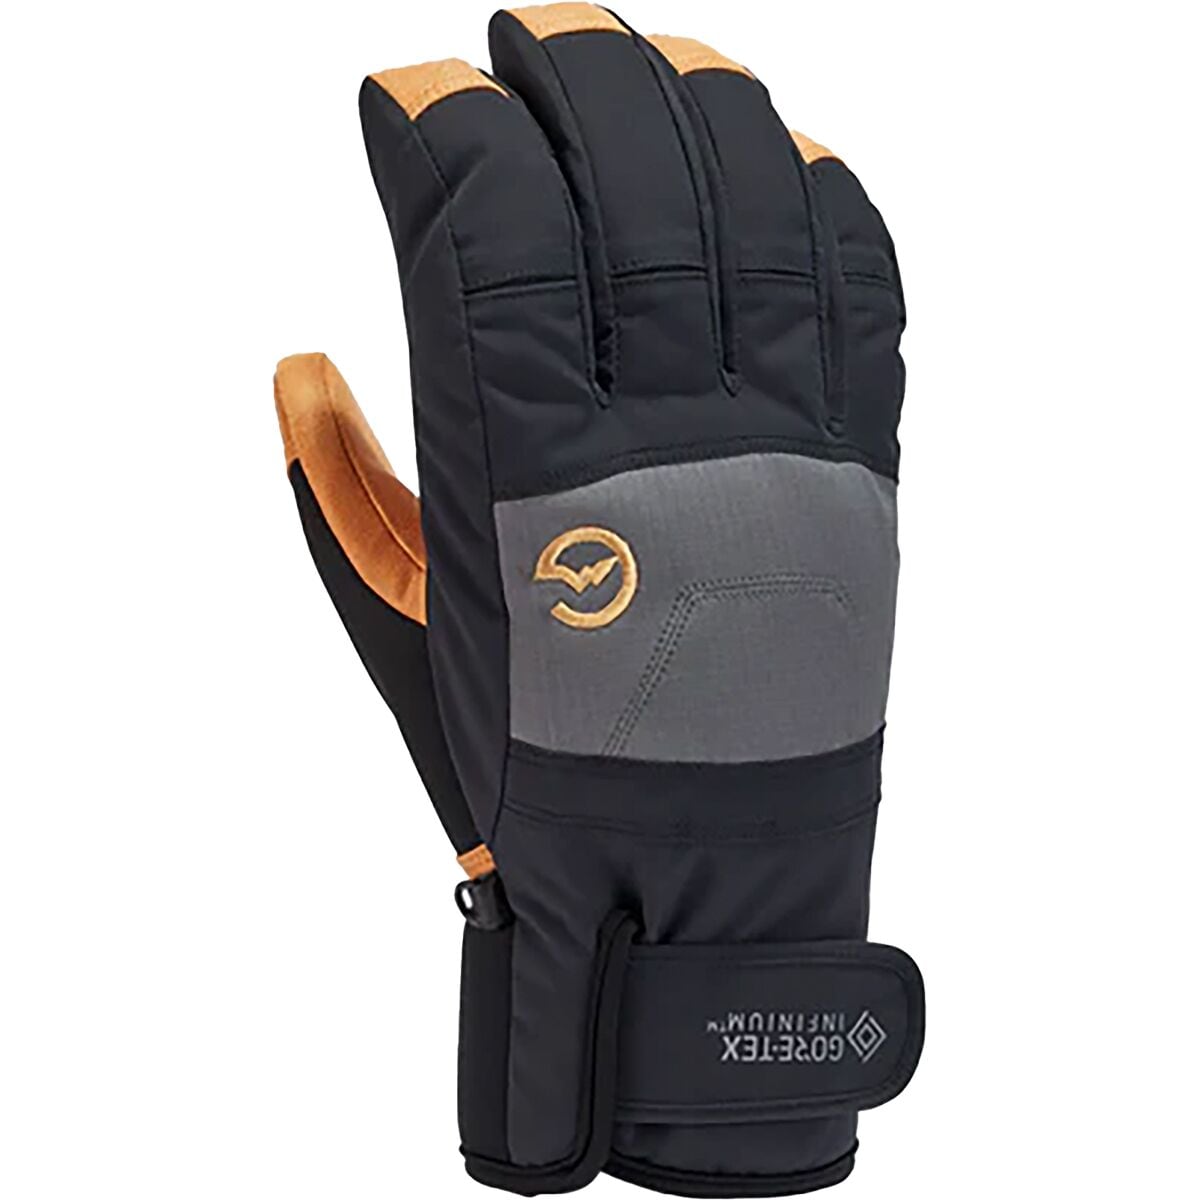 Gordini Swagger Glove - Men's Black Gunmetal Tan